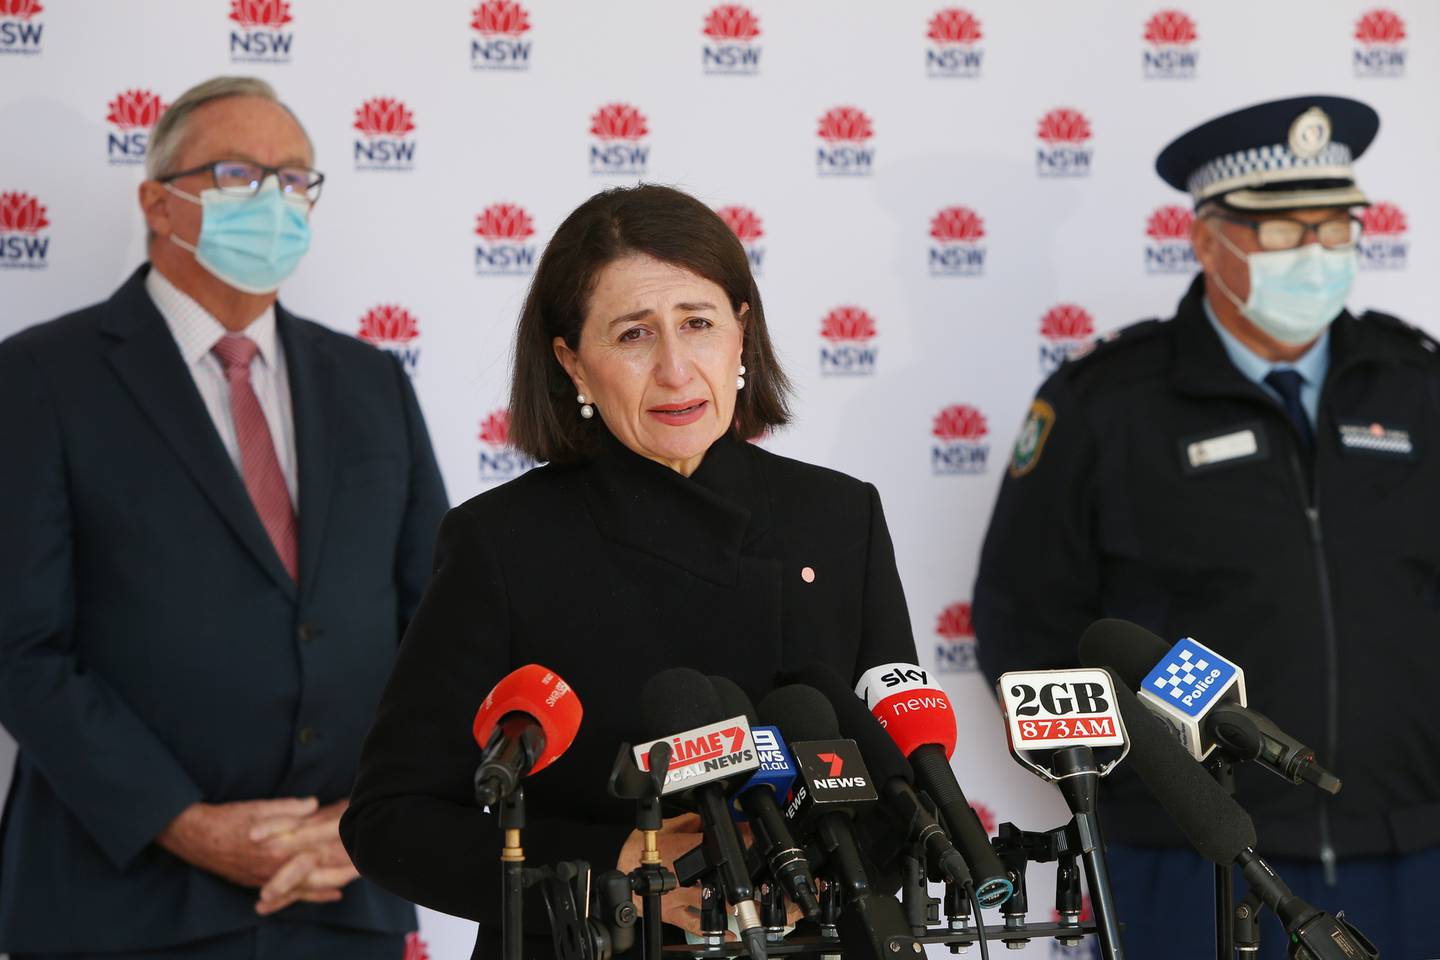 NSW Premier Gladys Berejiklian. Photo / Getty Images